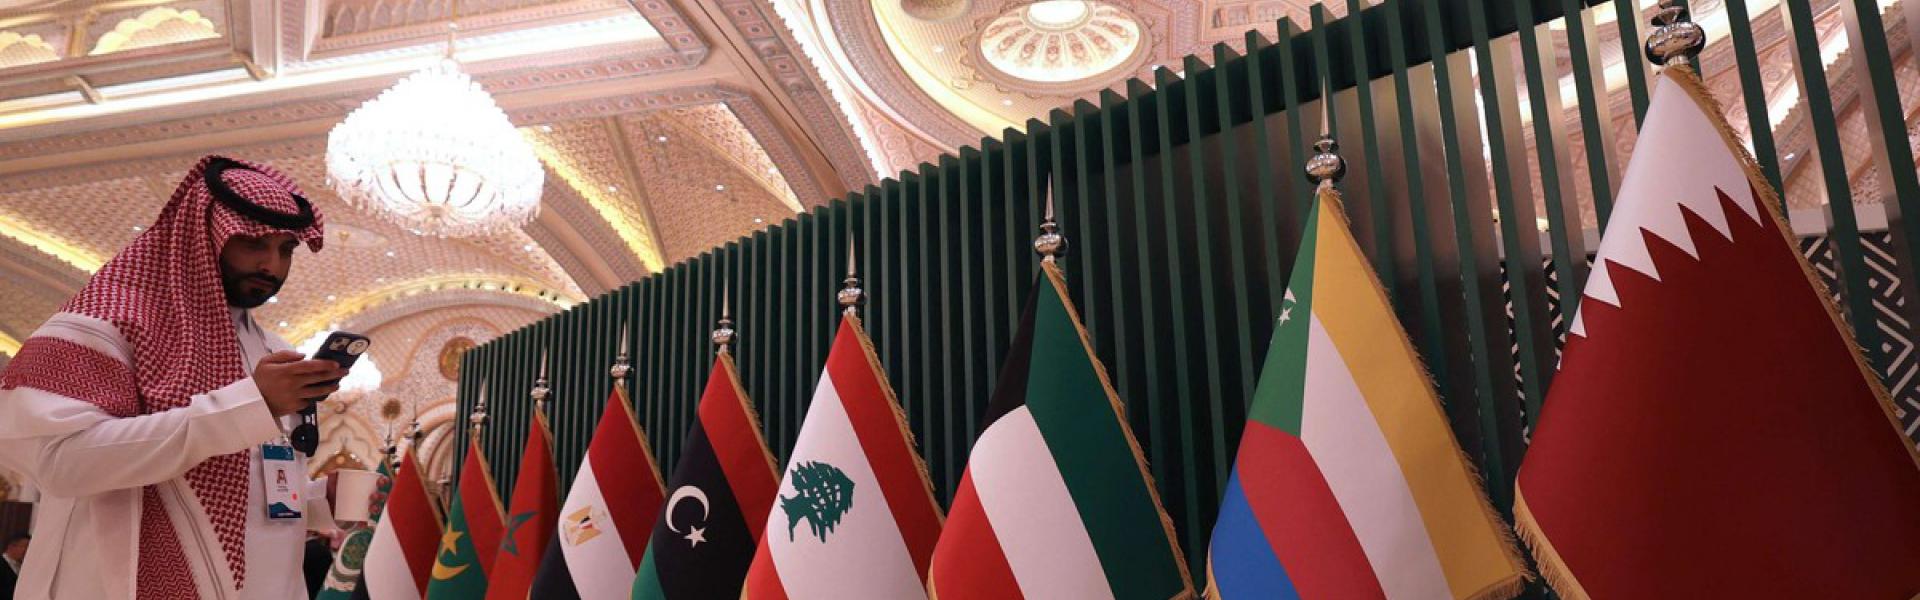 وجود مكتب للصندوق بالمملكة سيوسع العلاقة مع الدول العربية في المنطقة